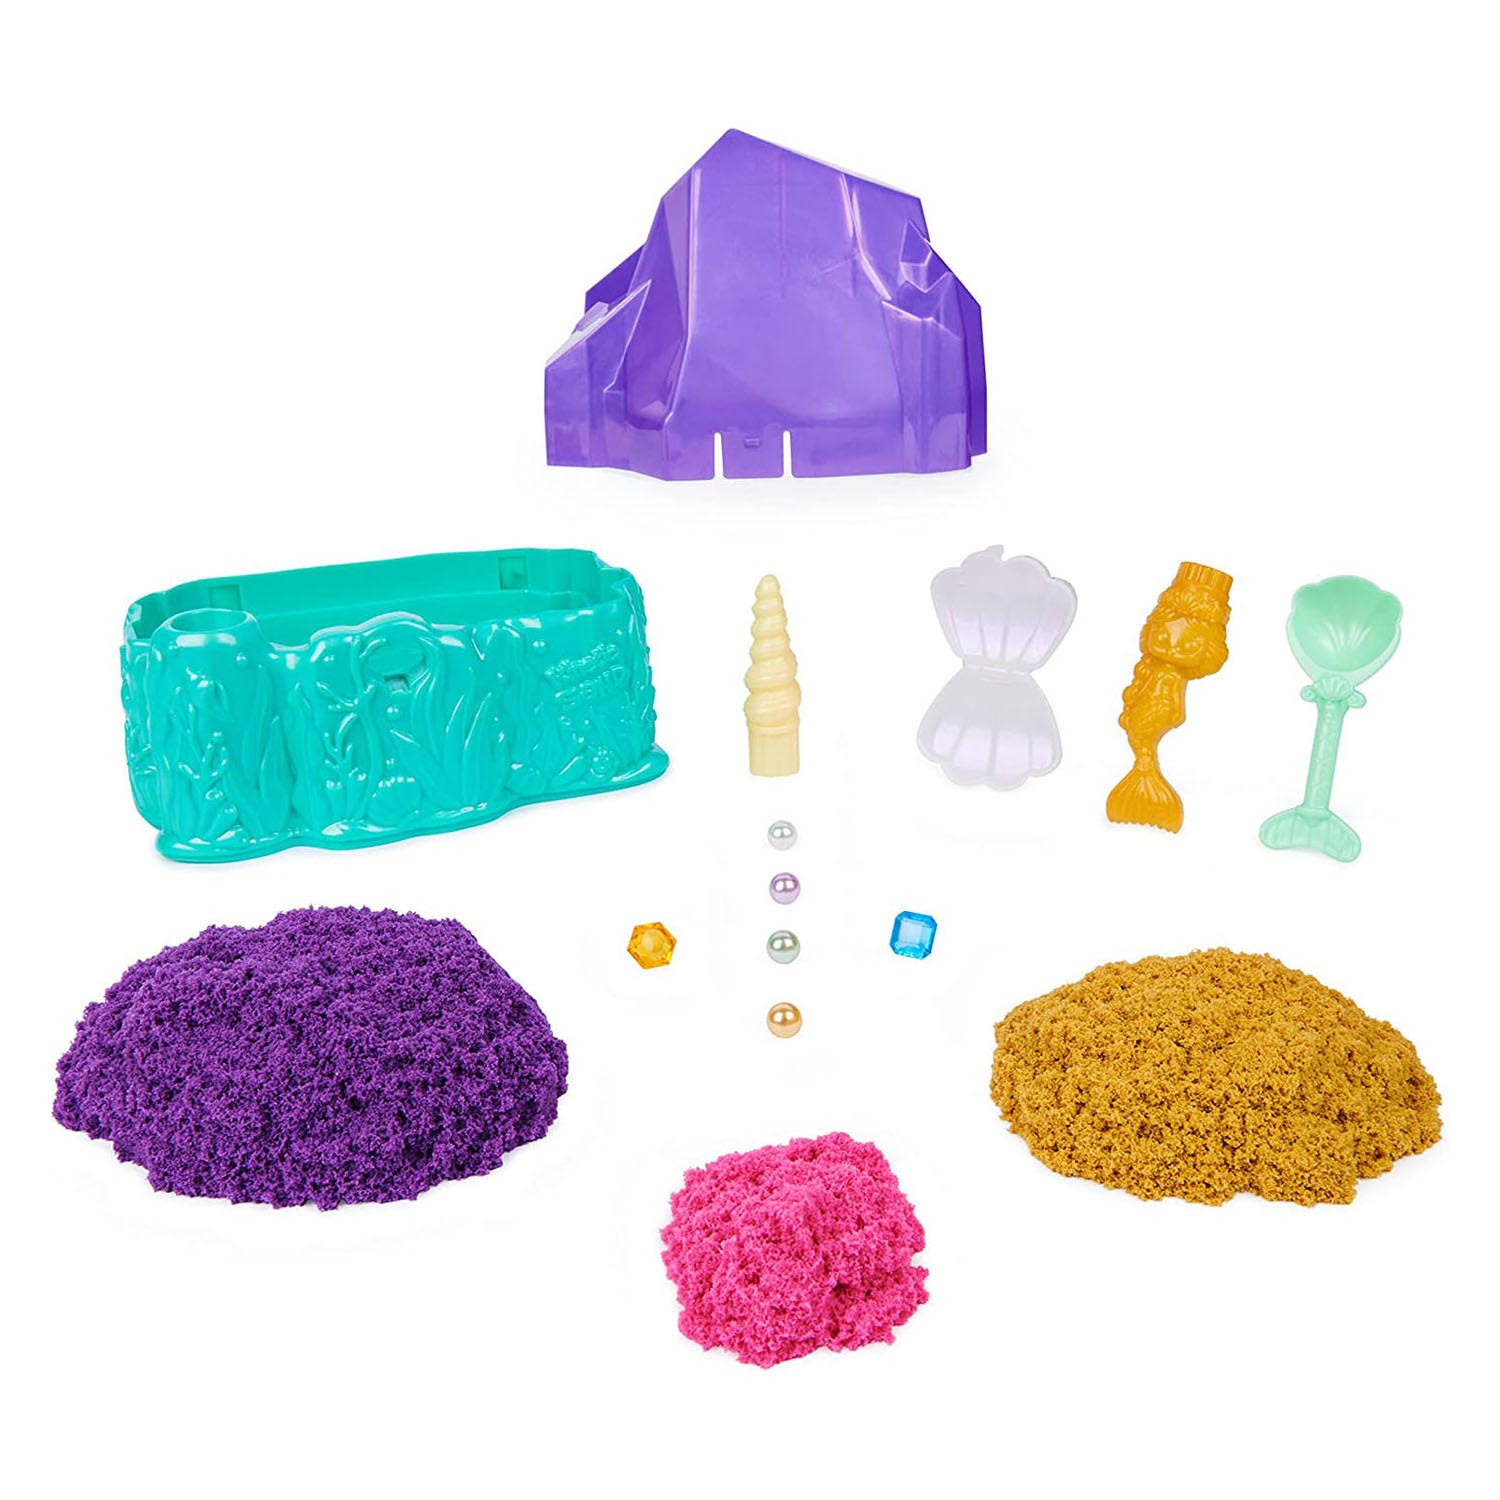 Kinetic Sand – Meerjungfrau-Kristall-Spielset